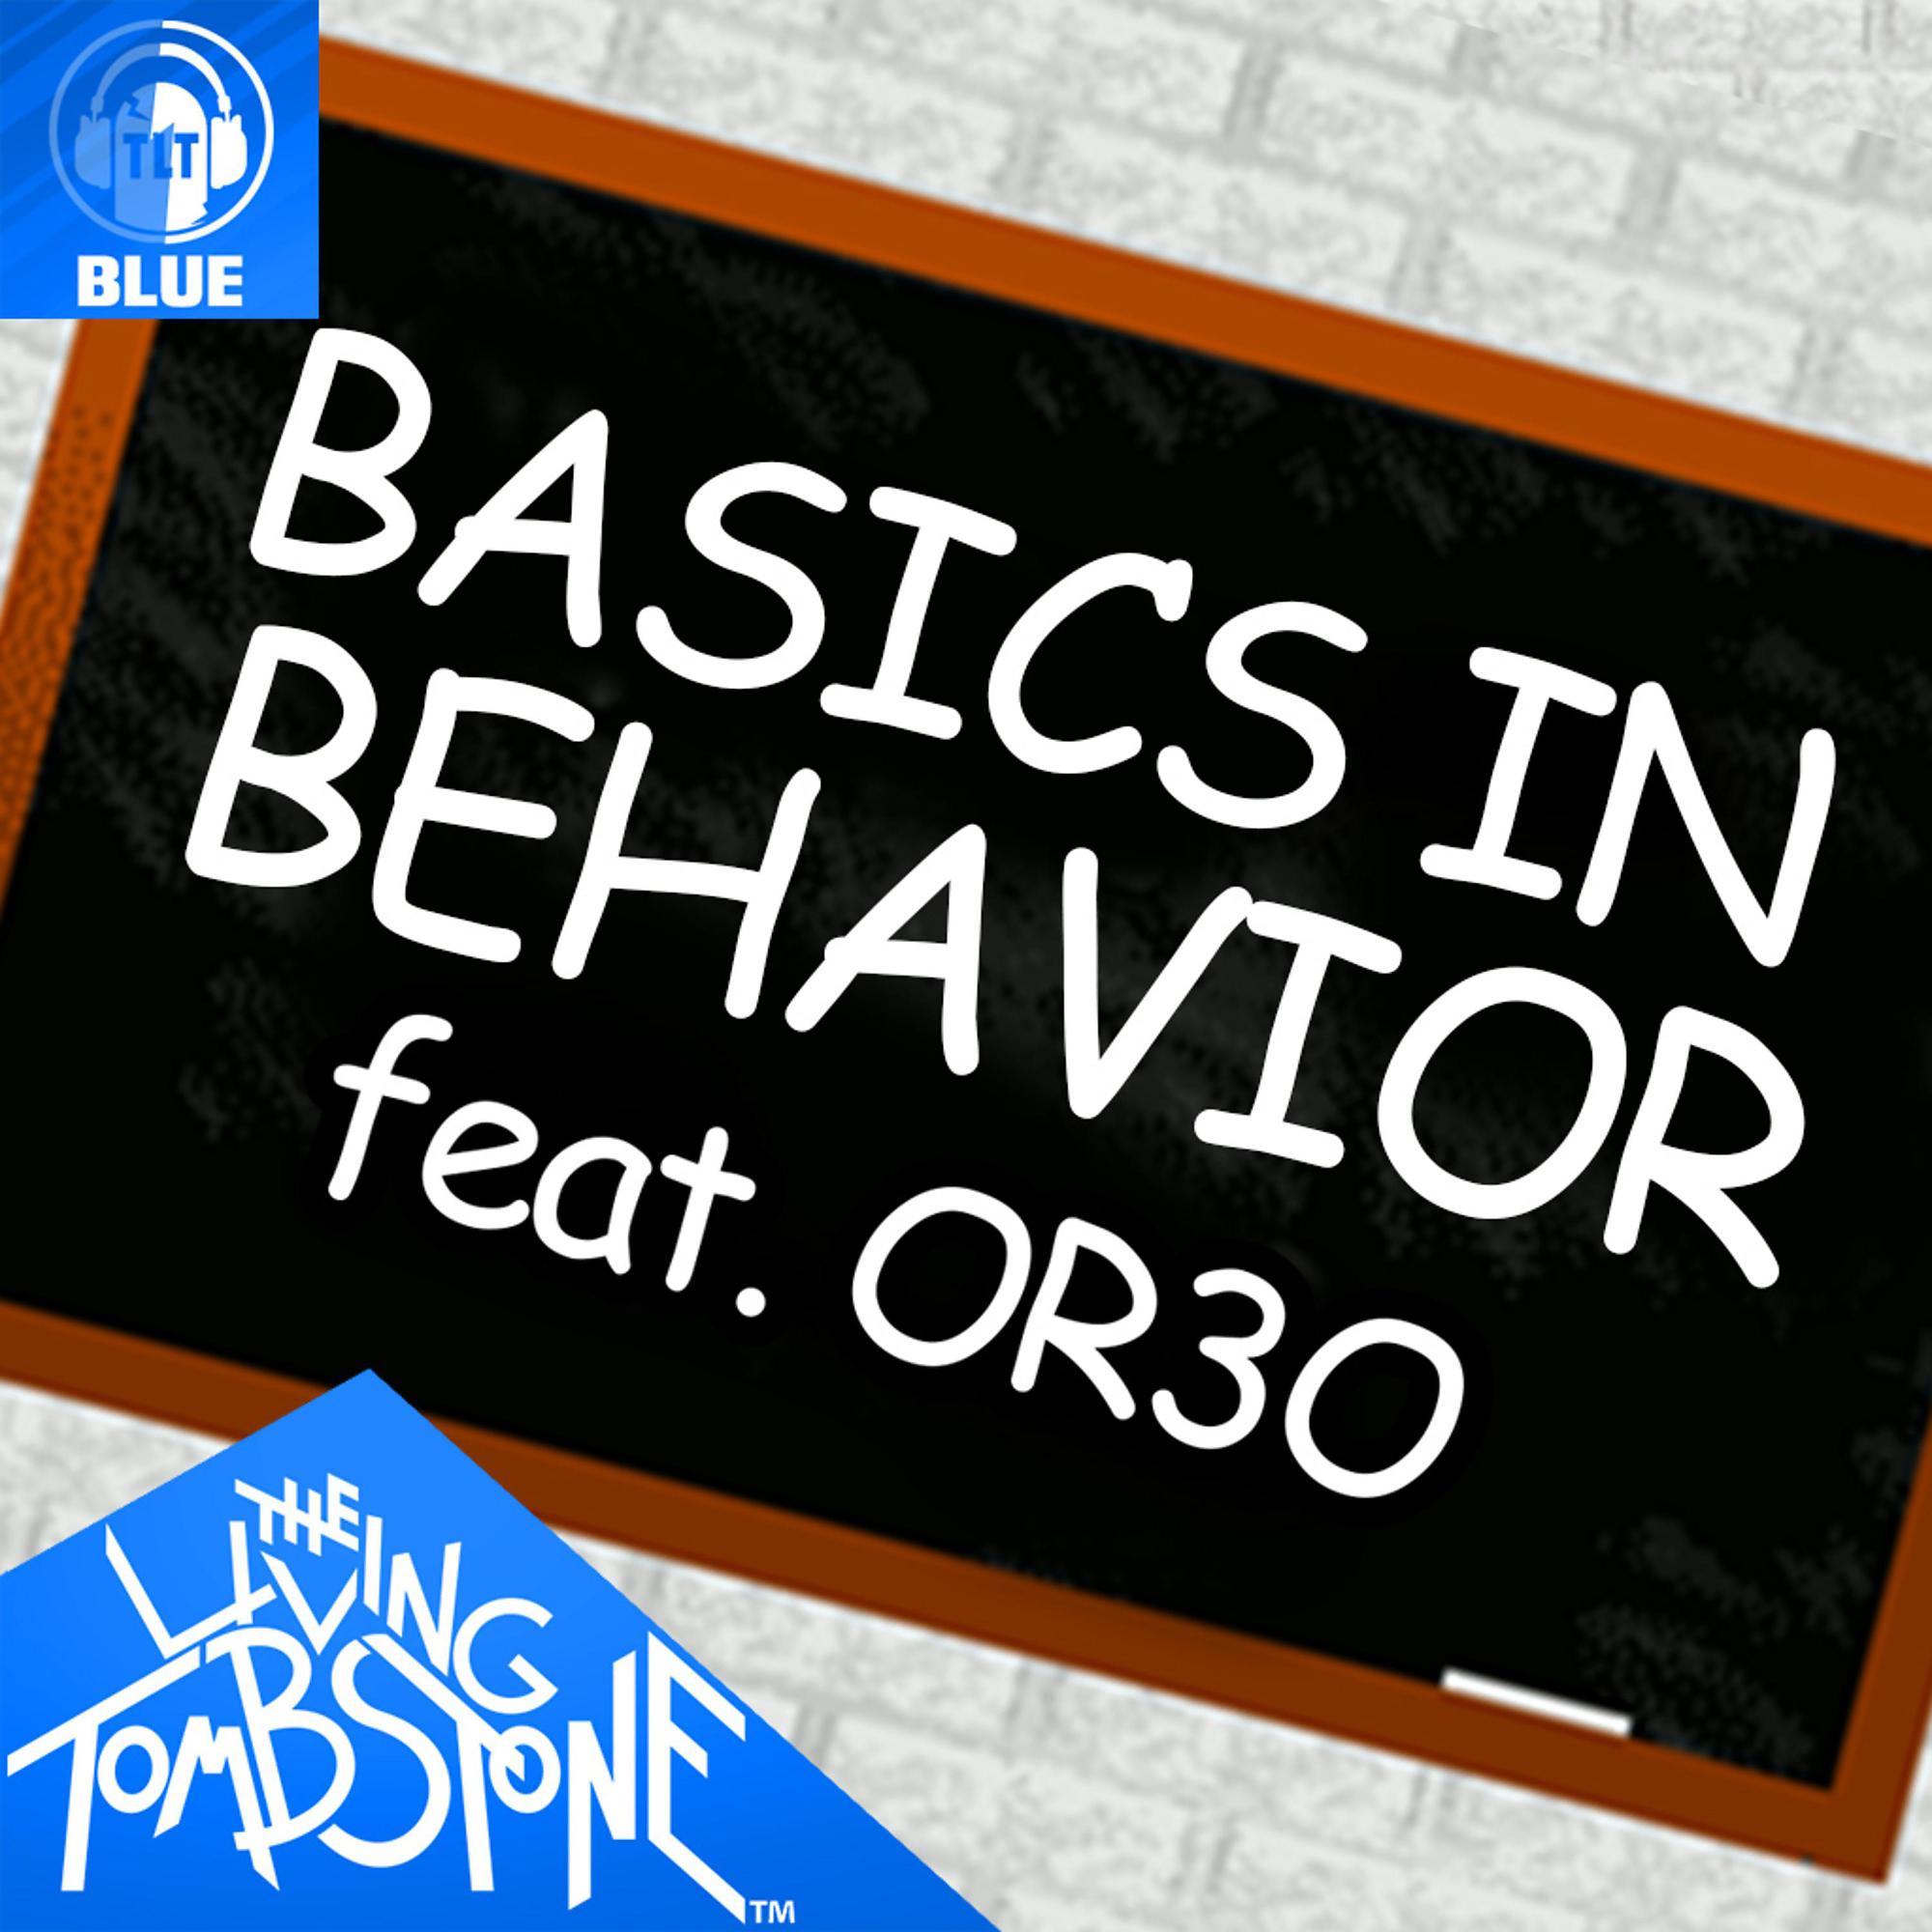 Basics in behavior paper. Basics in Behavior the Living Tombstone. Basics in Behavior the Living. Basics in Behavior or3o- Baldi's Basics the Living Tombstone. Basics in Behavior Blue.